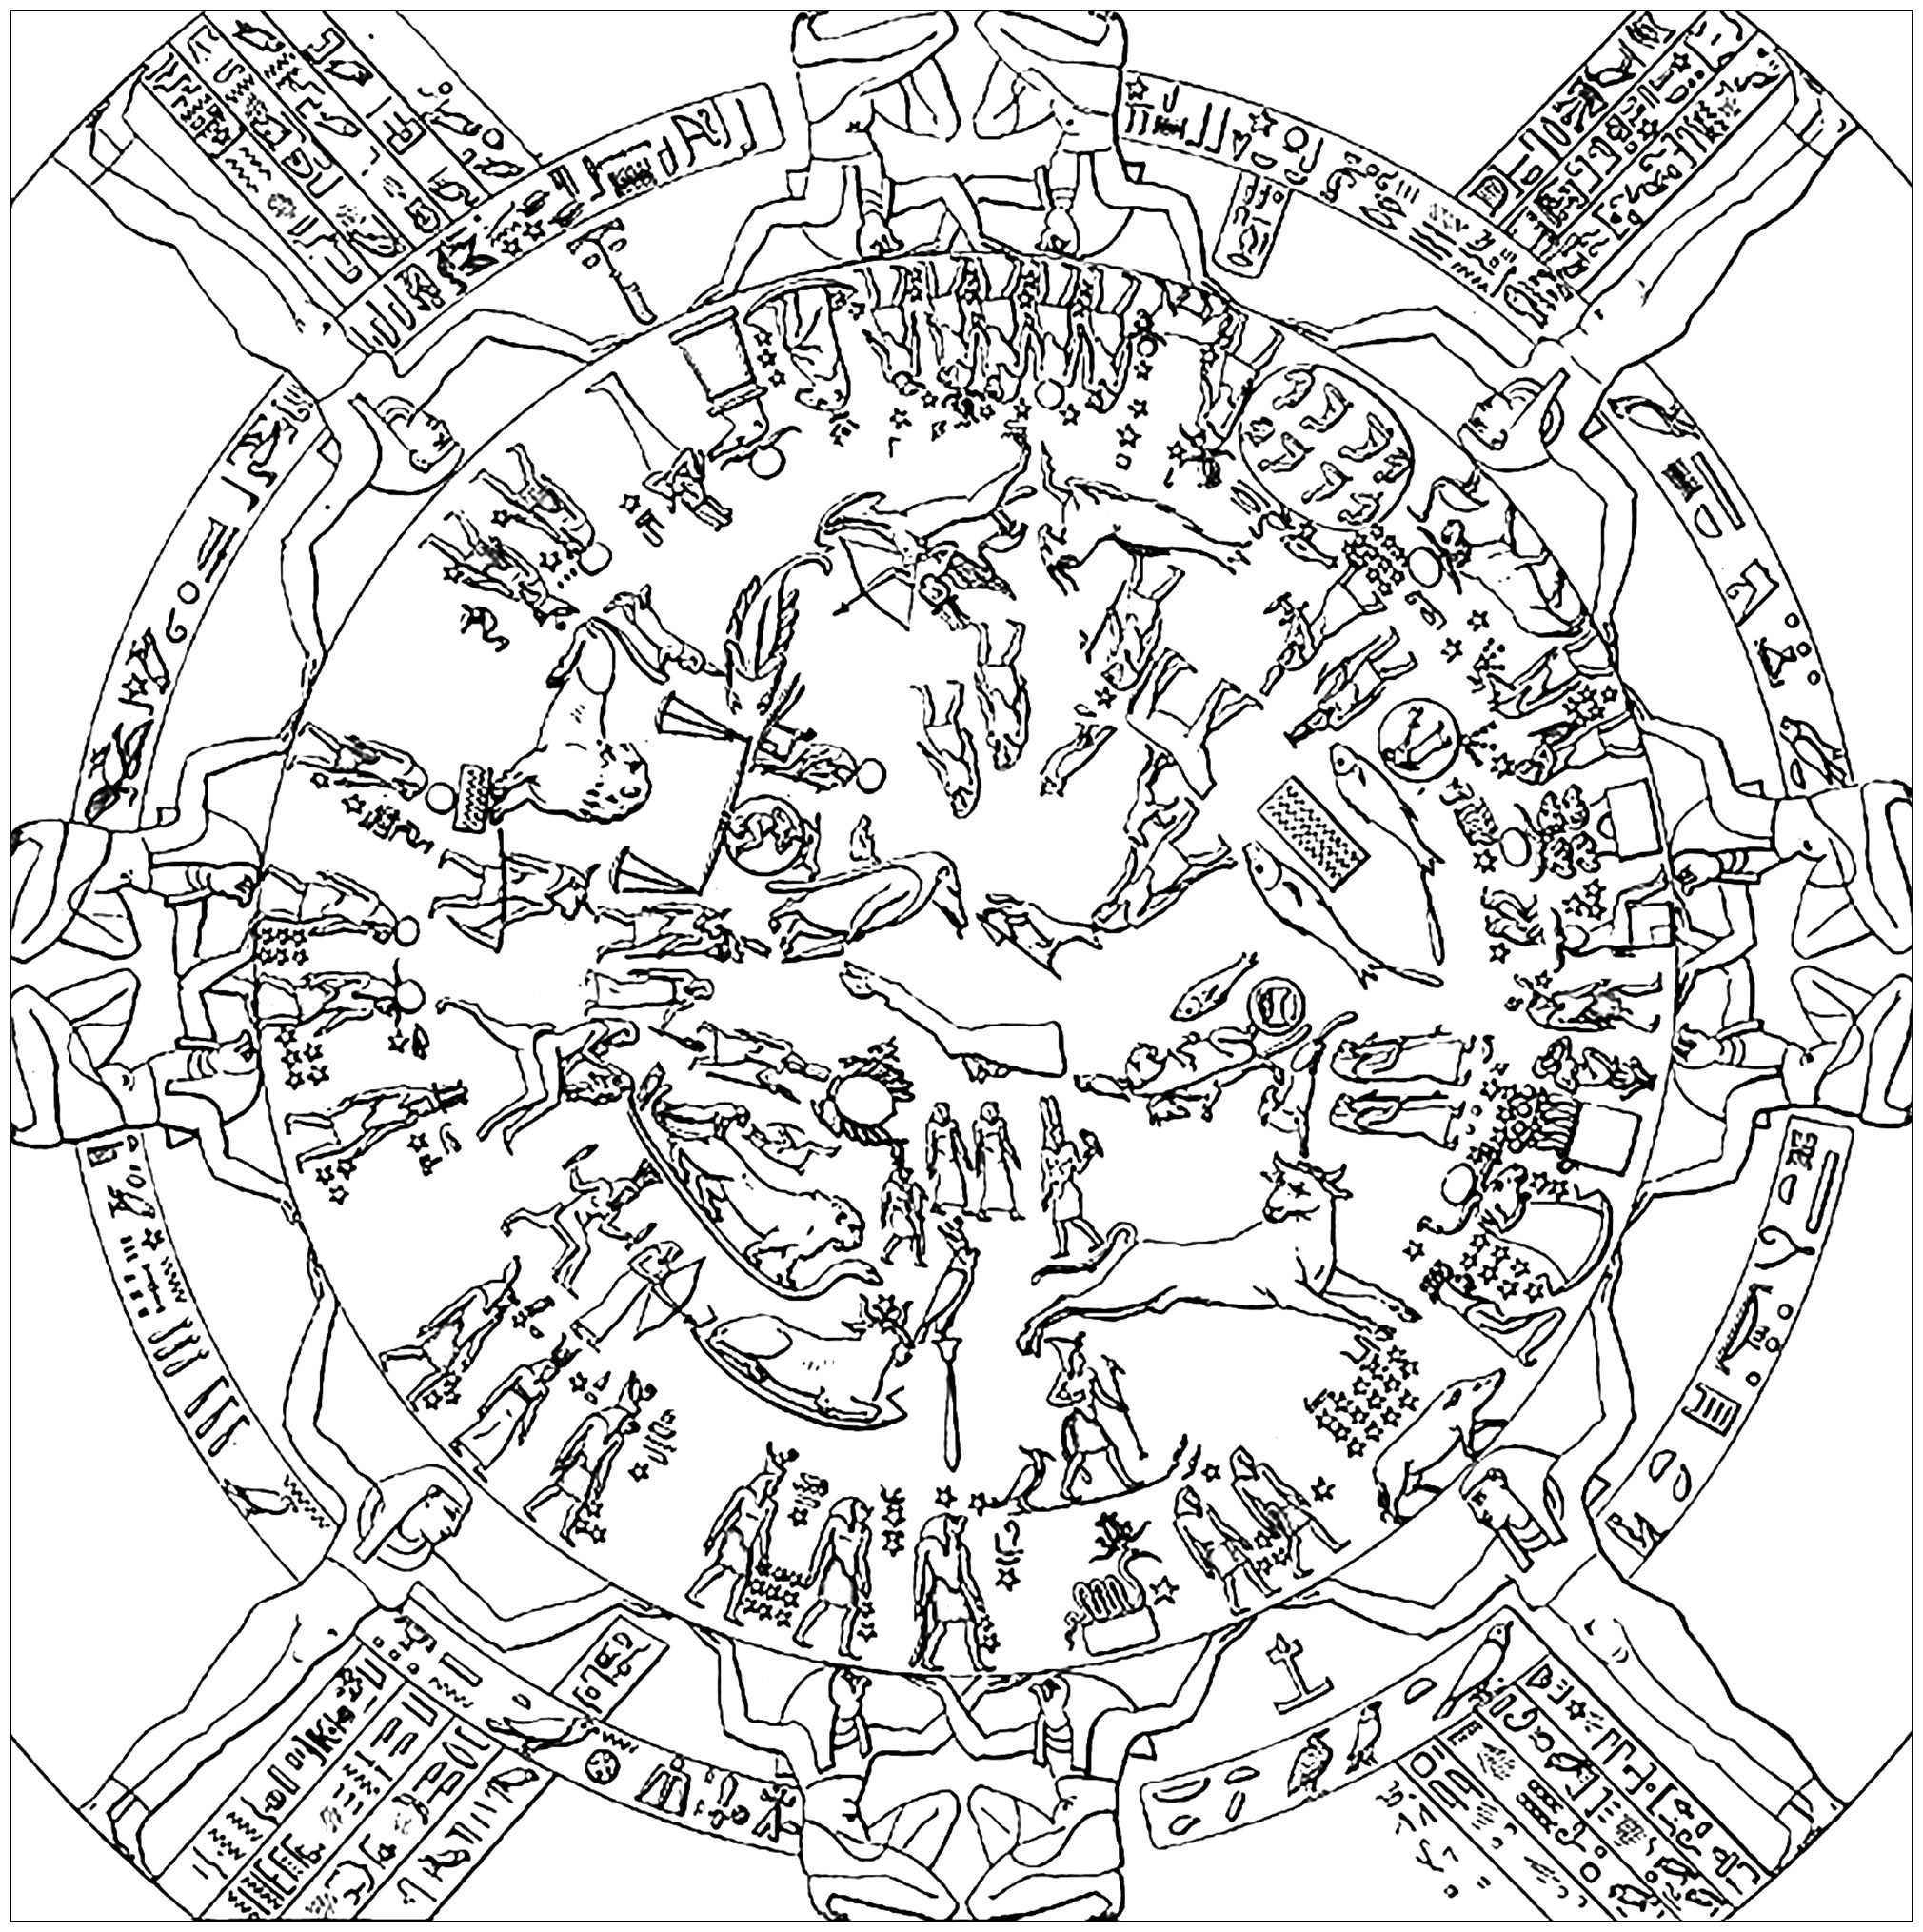 Coloriage créé à partir du premier dessin représentant le Zodiaque de Dendera (1802). Le zodiaque de Dendérah est un bas-relief célèbre de l'Égypte antique représentant la voûte céleste et ses constellations. Il était placé au plafond d'une chapelle dédiée à Osiris, située sur le toit du temple d'Hathor à Dendérah. C'est une œuvre de la période ptolémaïque sculptée dans un bloc de grès et mesurant 2,55 mètres sur 2,53. Il date de 50 avant notre ère. Transporté en France en 1821, il est aujourd'hui exposé à Paris, au musée du Louvre.